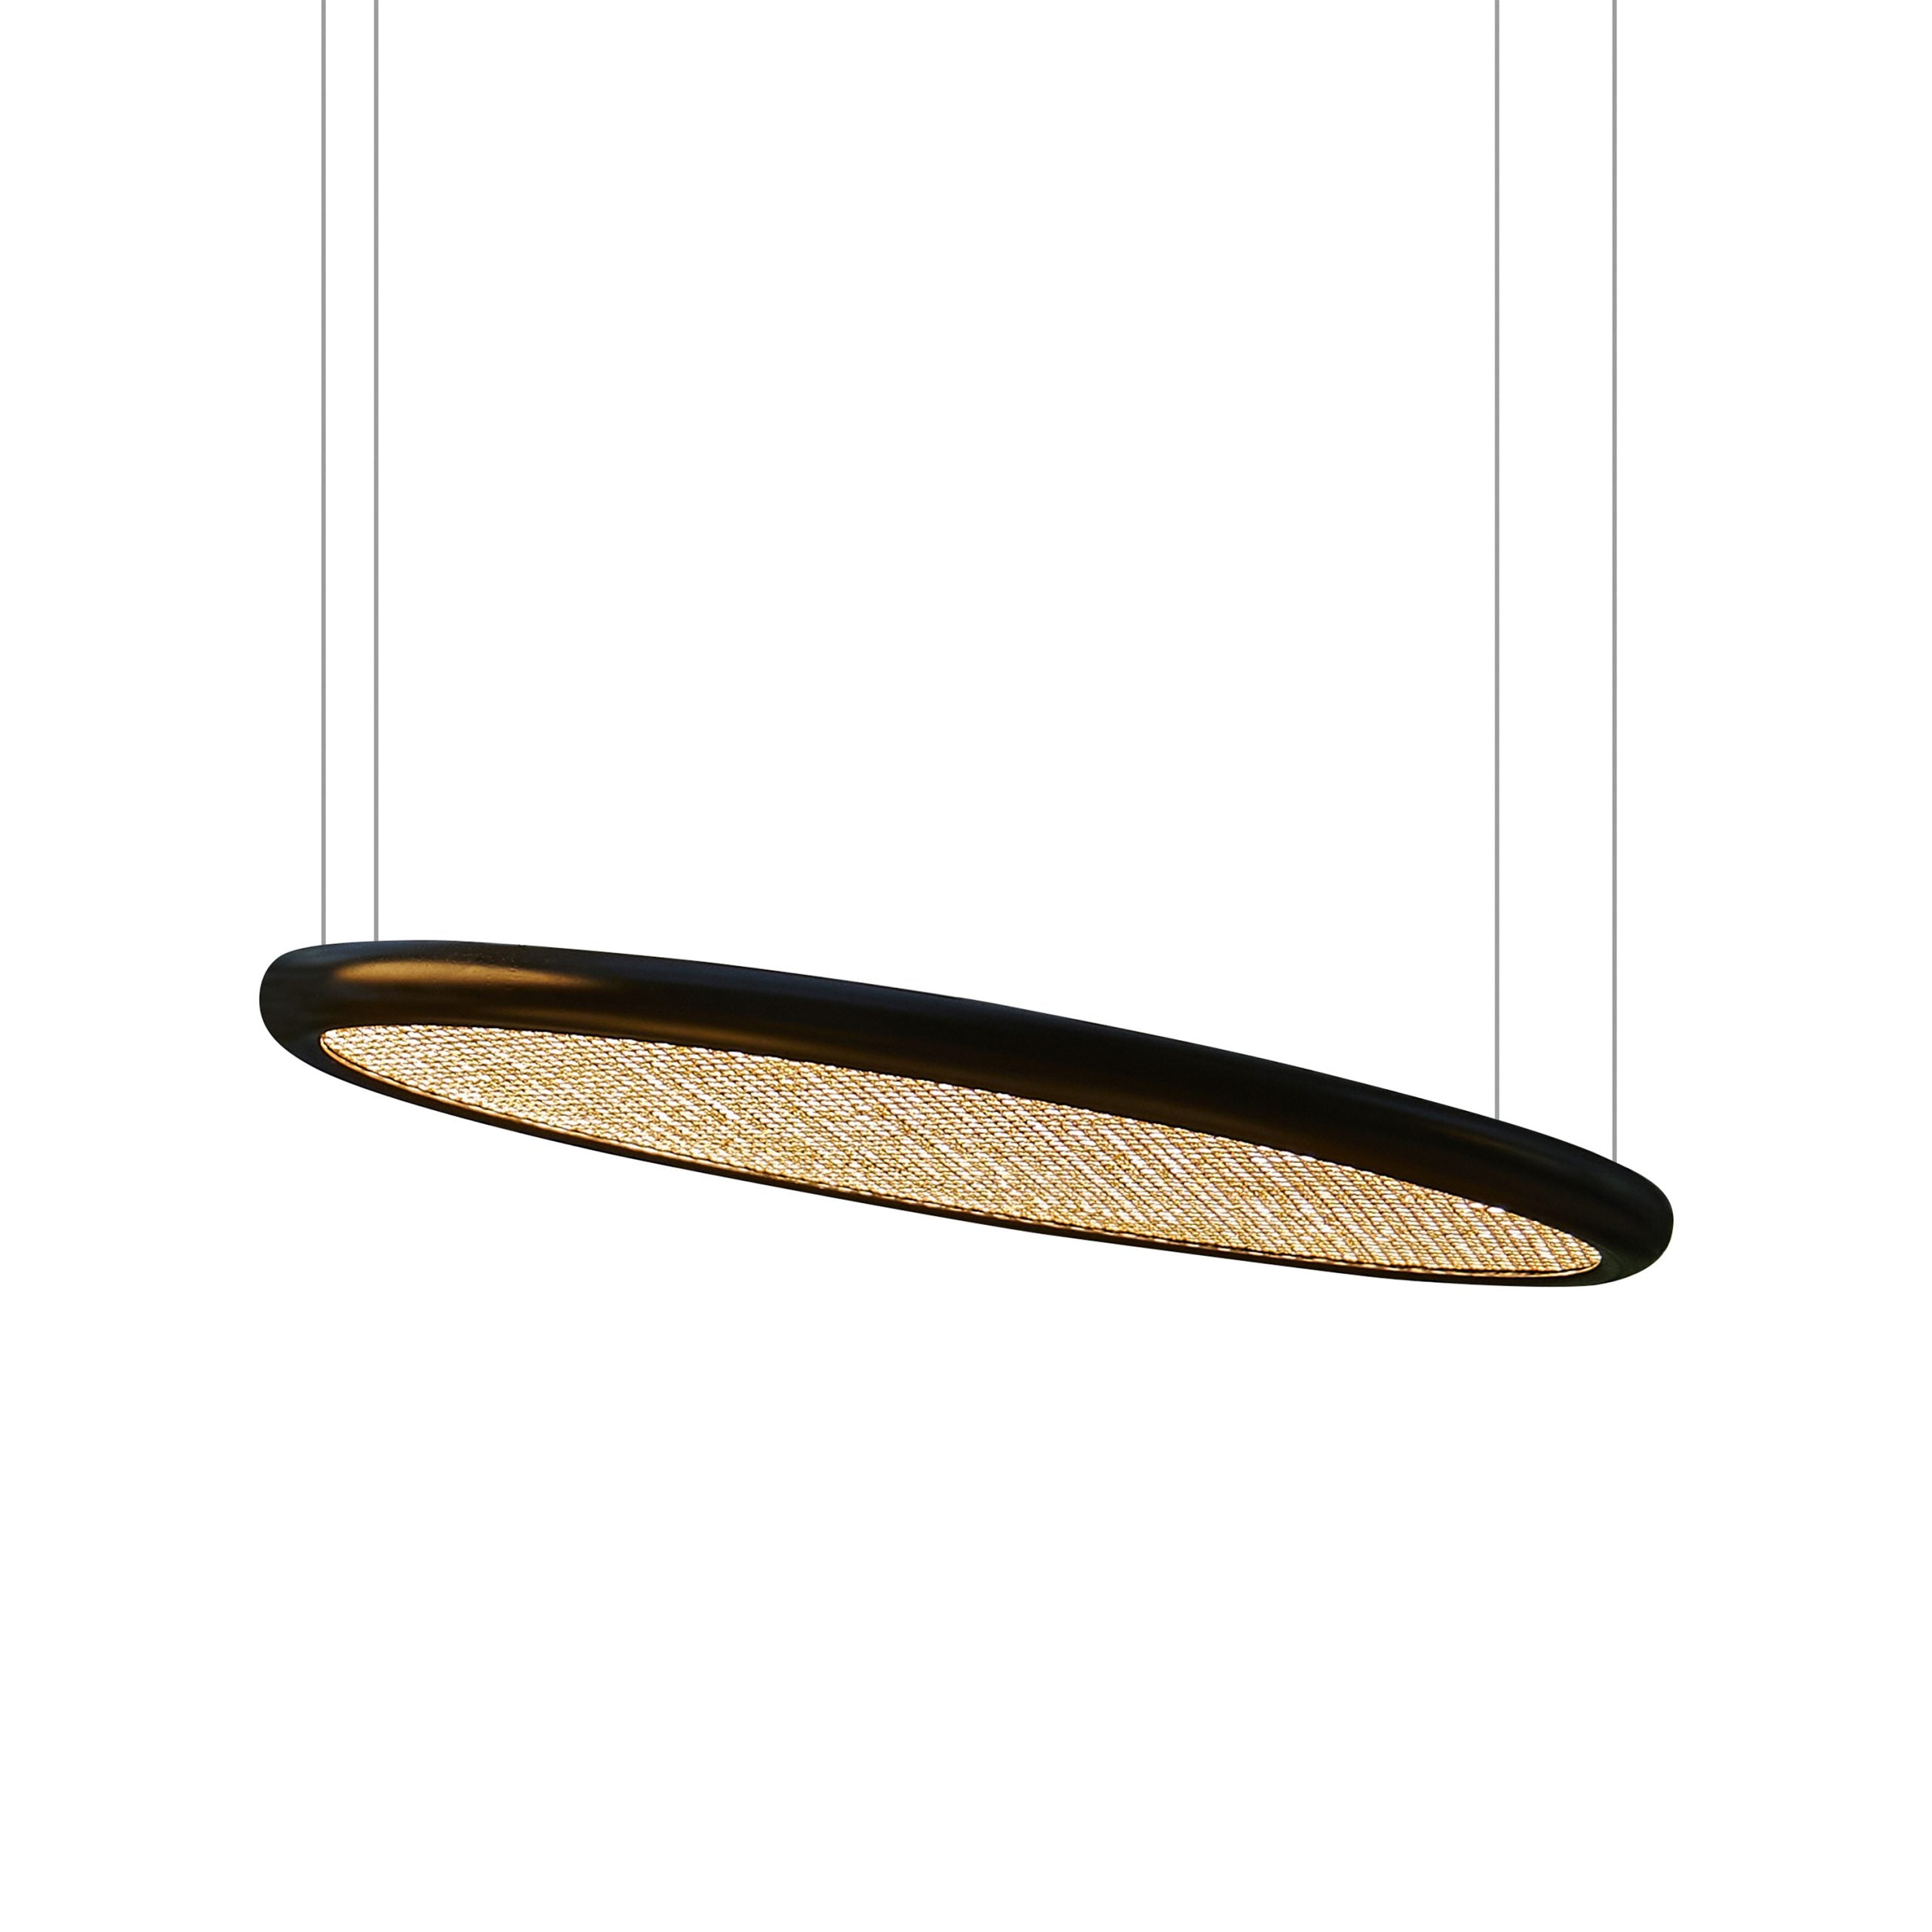 Lampa wisząca BOGOTÀ słoma wiedeńska Contardi L 2 m bez opcji ściemniania Eye on Design